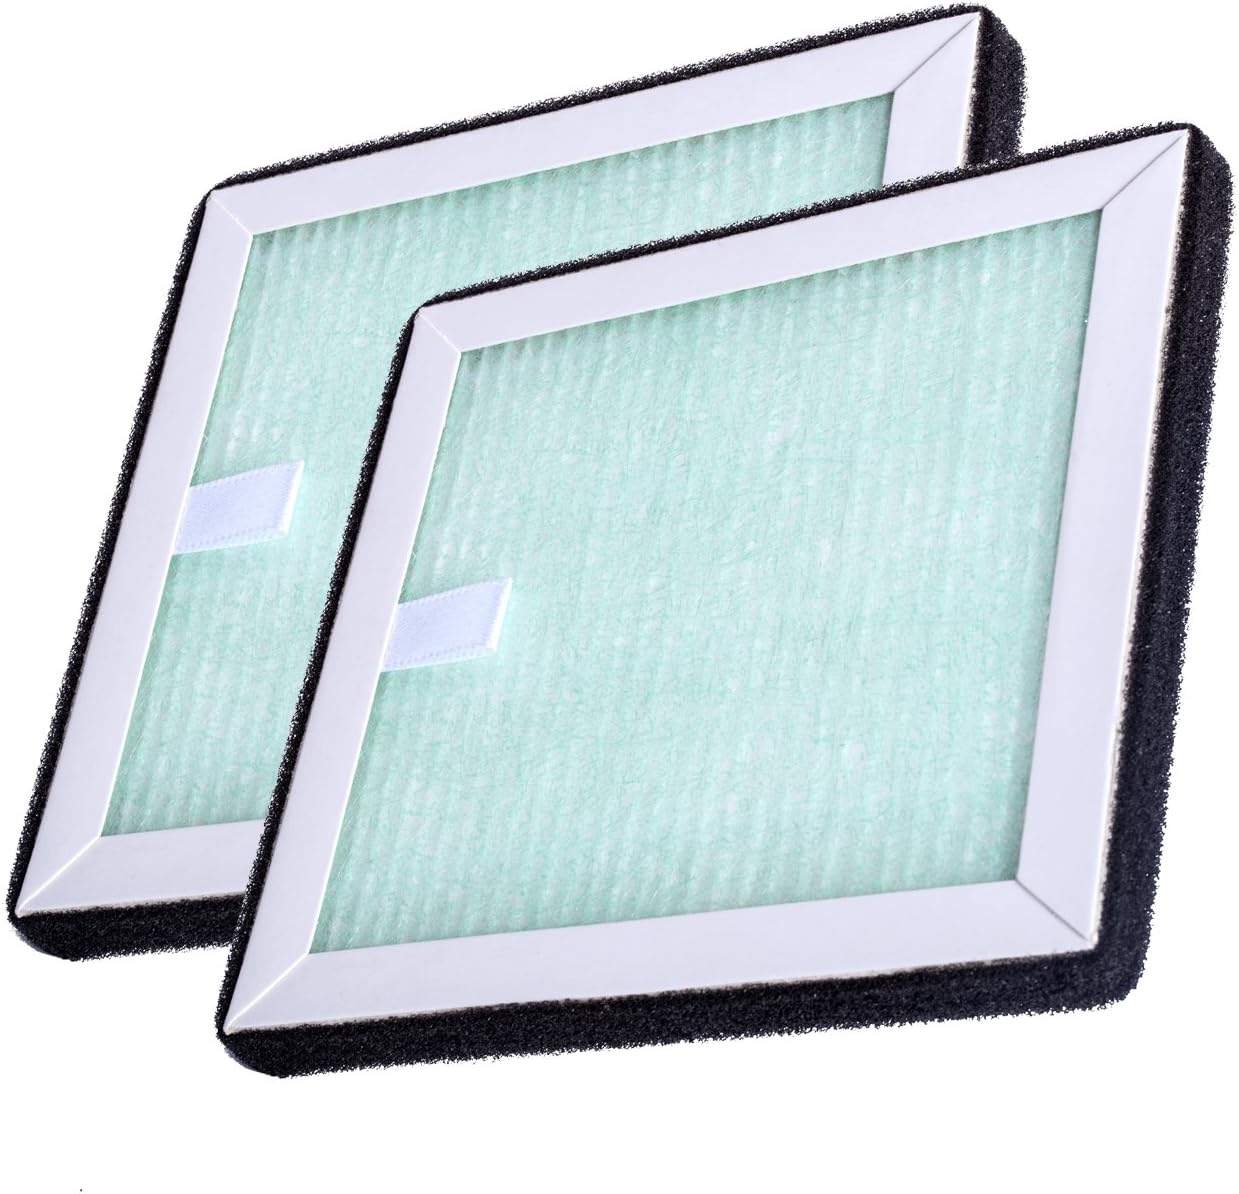 空気清浄スモークレス灰皿専用フィルター 対応品番:CT047/CT050 二枚セット CT047-1